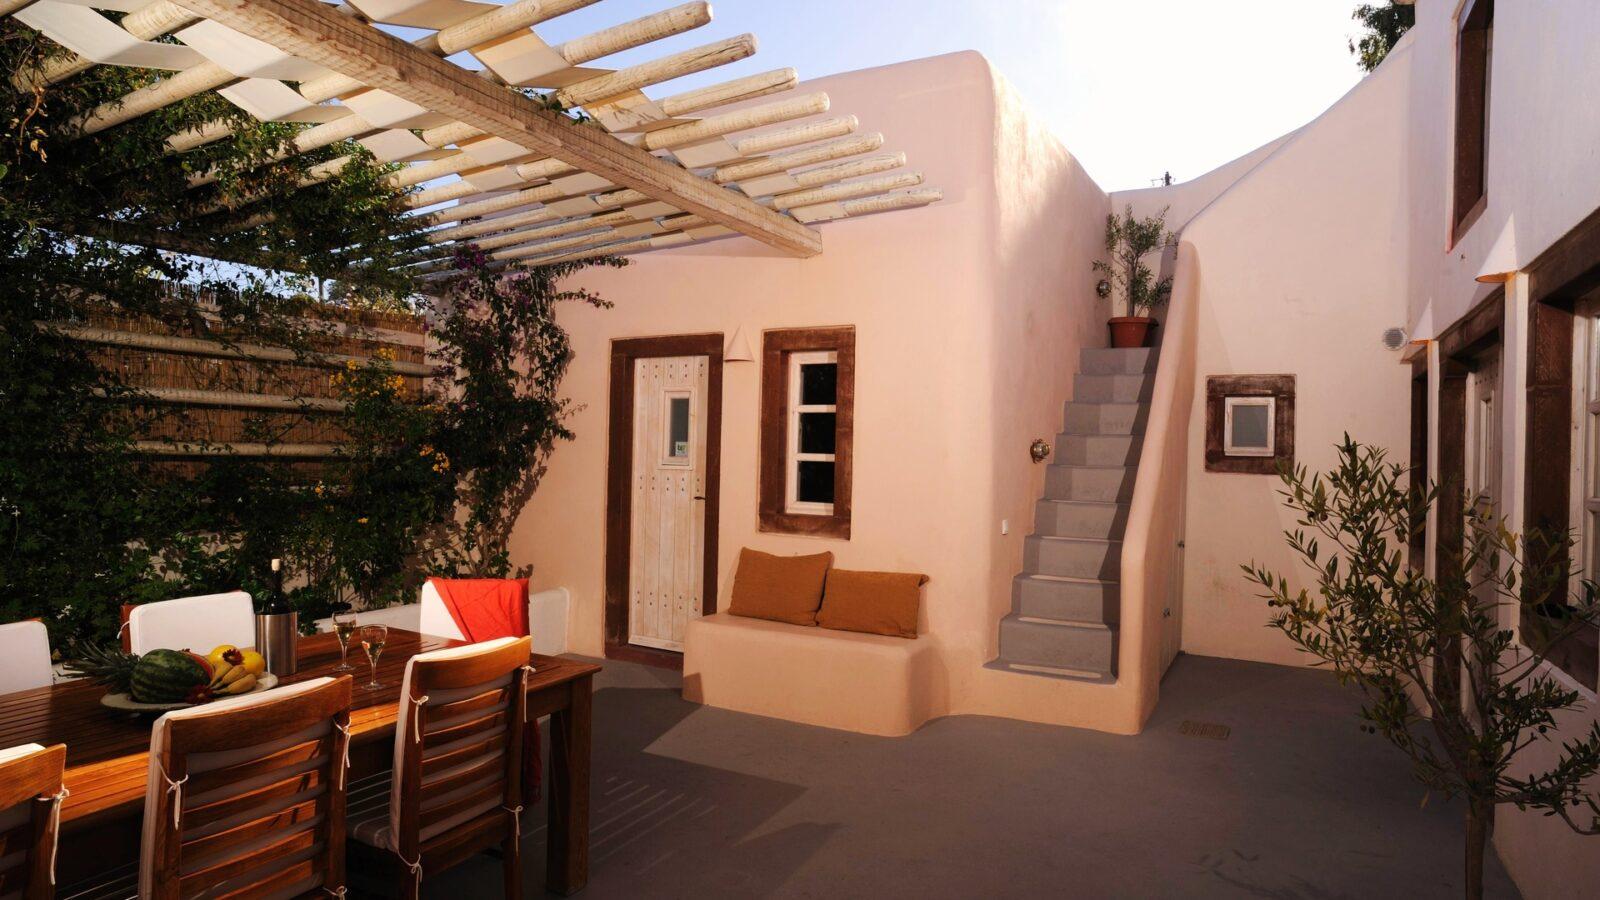 THE PERFECT 186 m² DETACHED HOUSE IN IMEROVIGLI, SANTORINI, GREECE